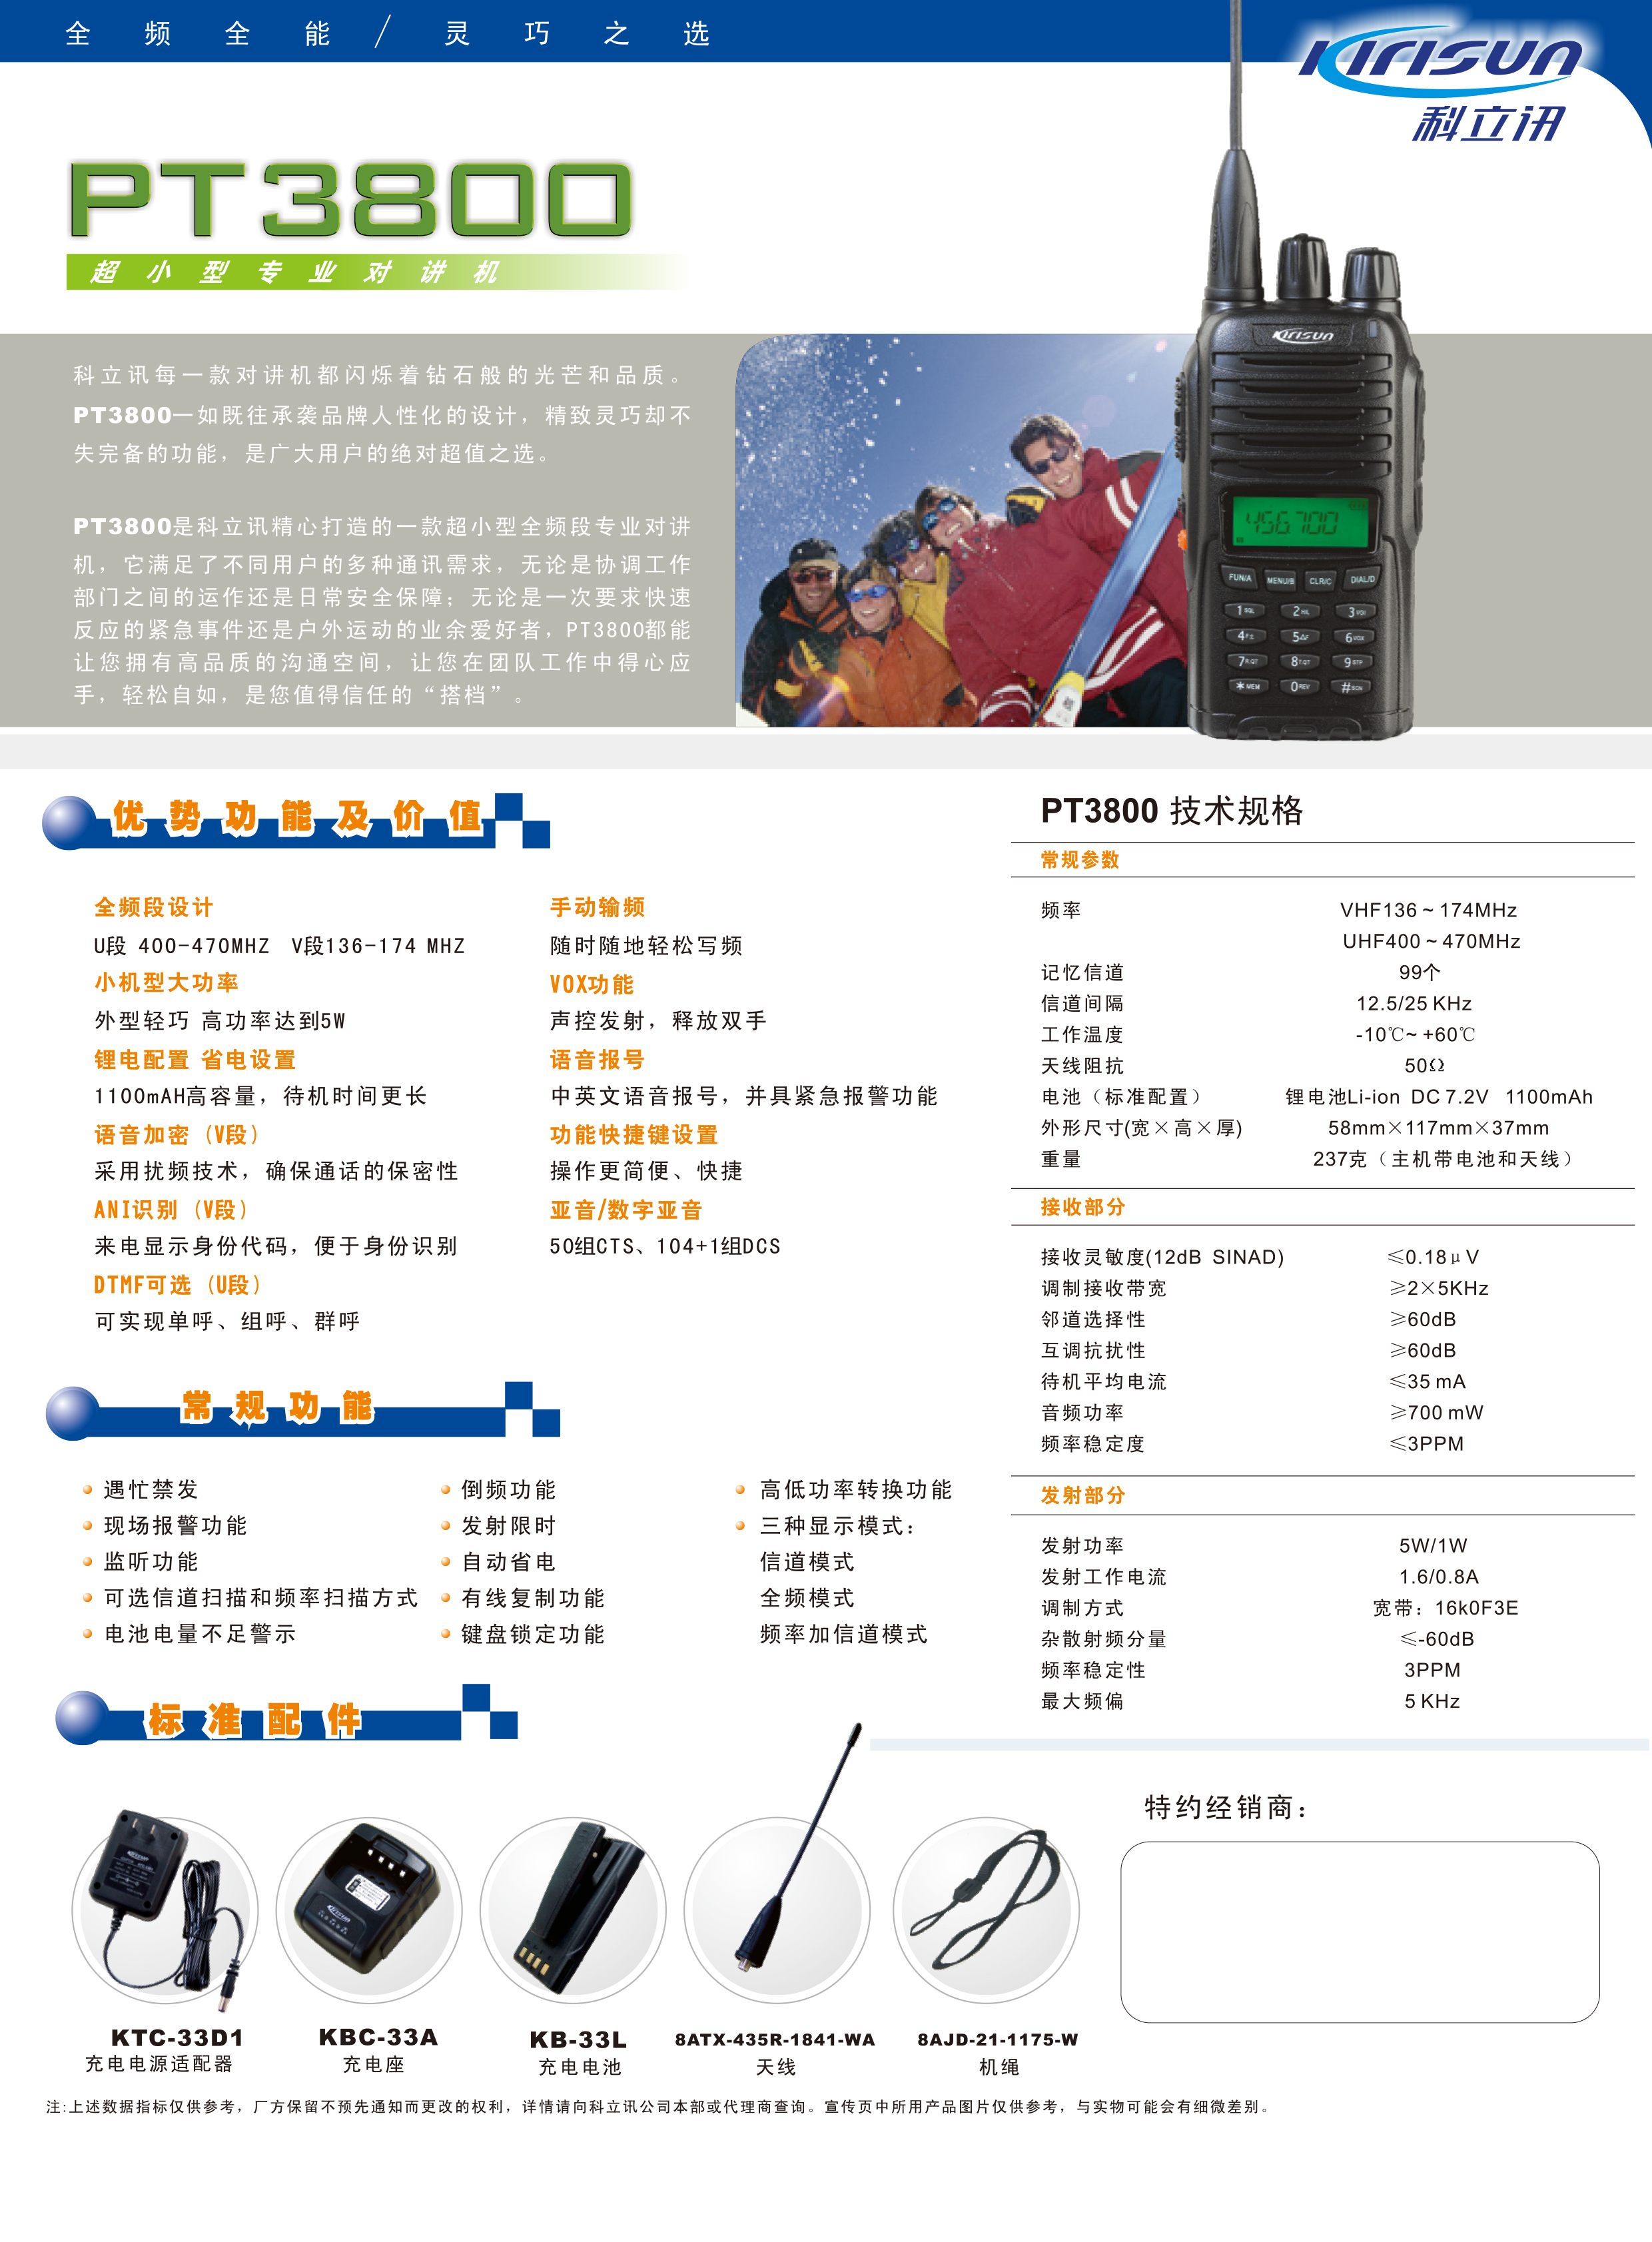 PT3800中文彩页-2